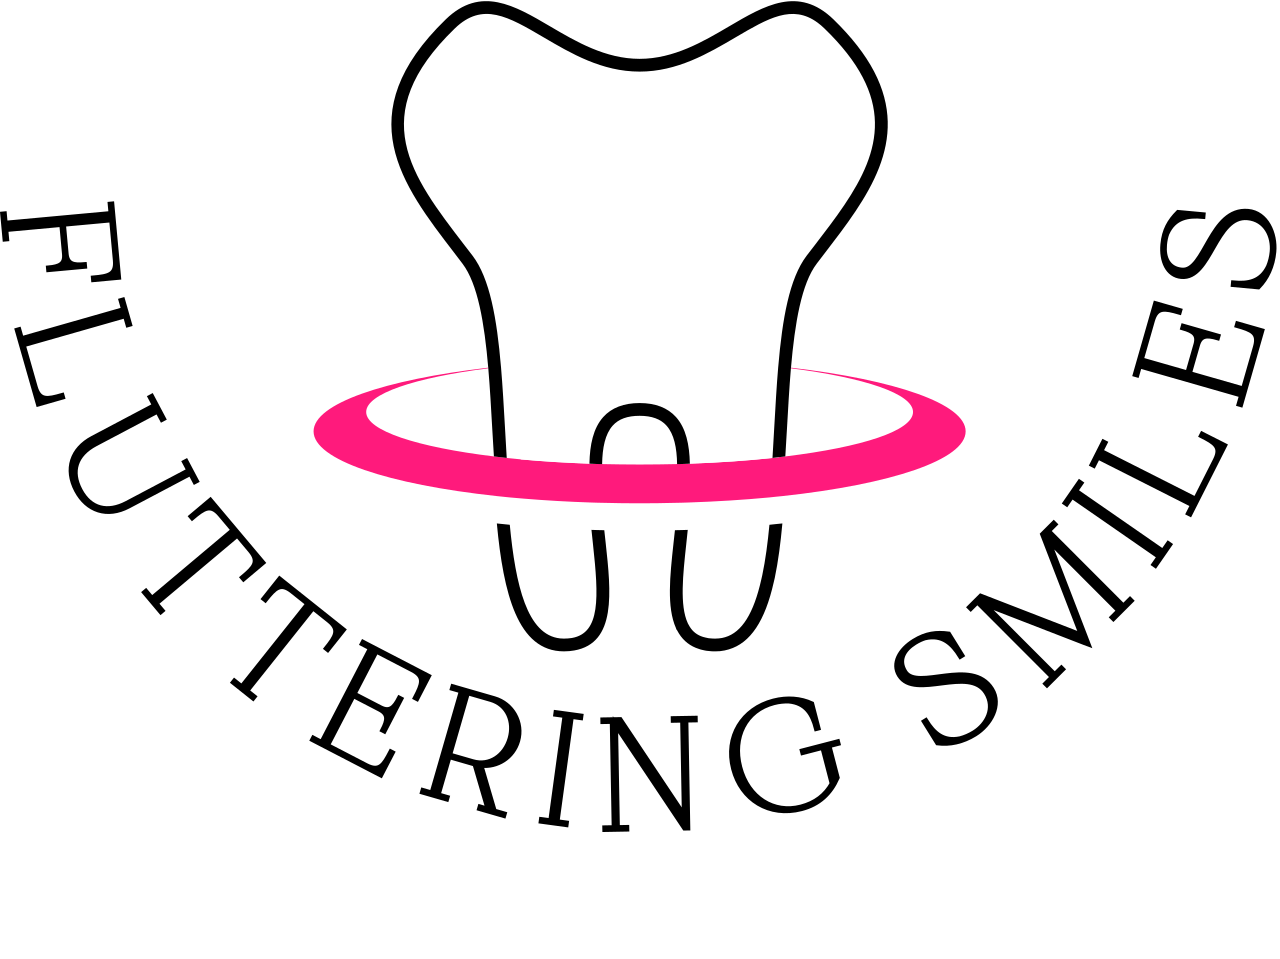 FLUTTERING SMILES's logo